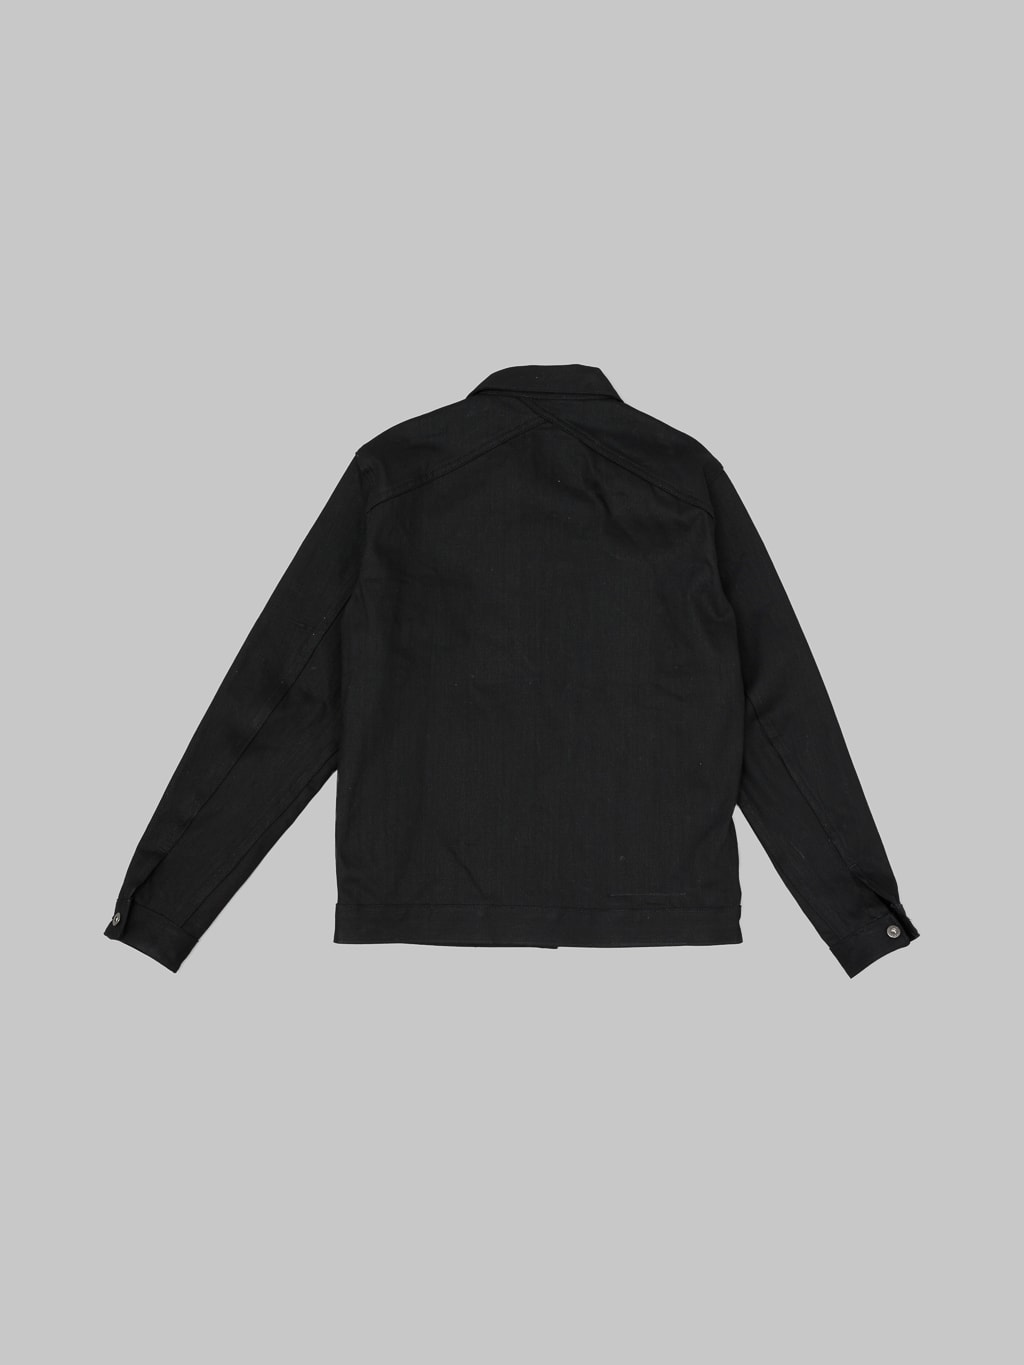 3sixteen type III denim jacket double black back view